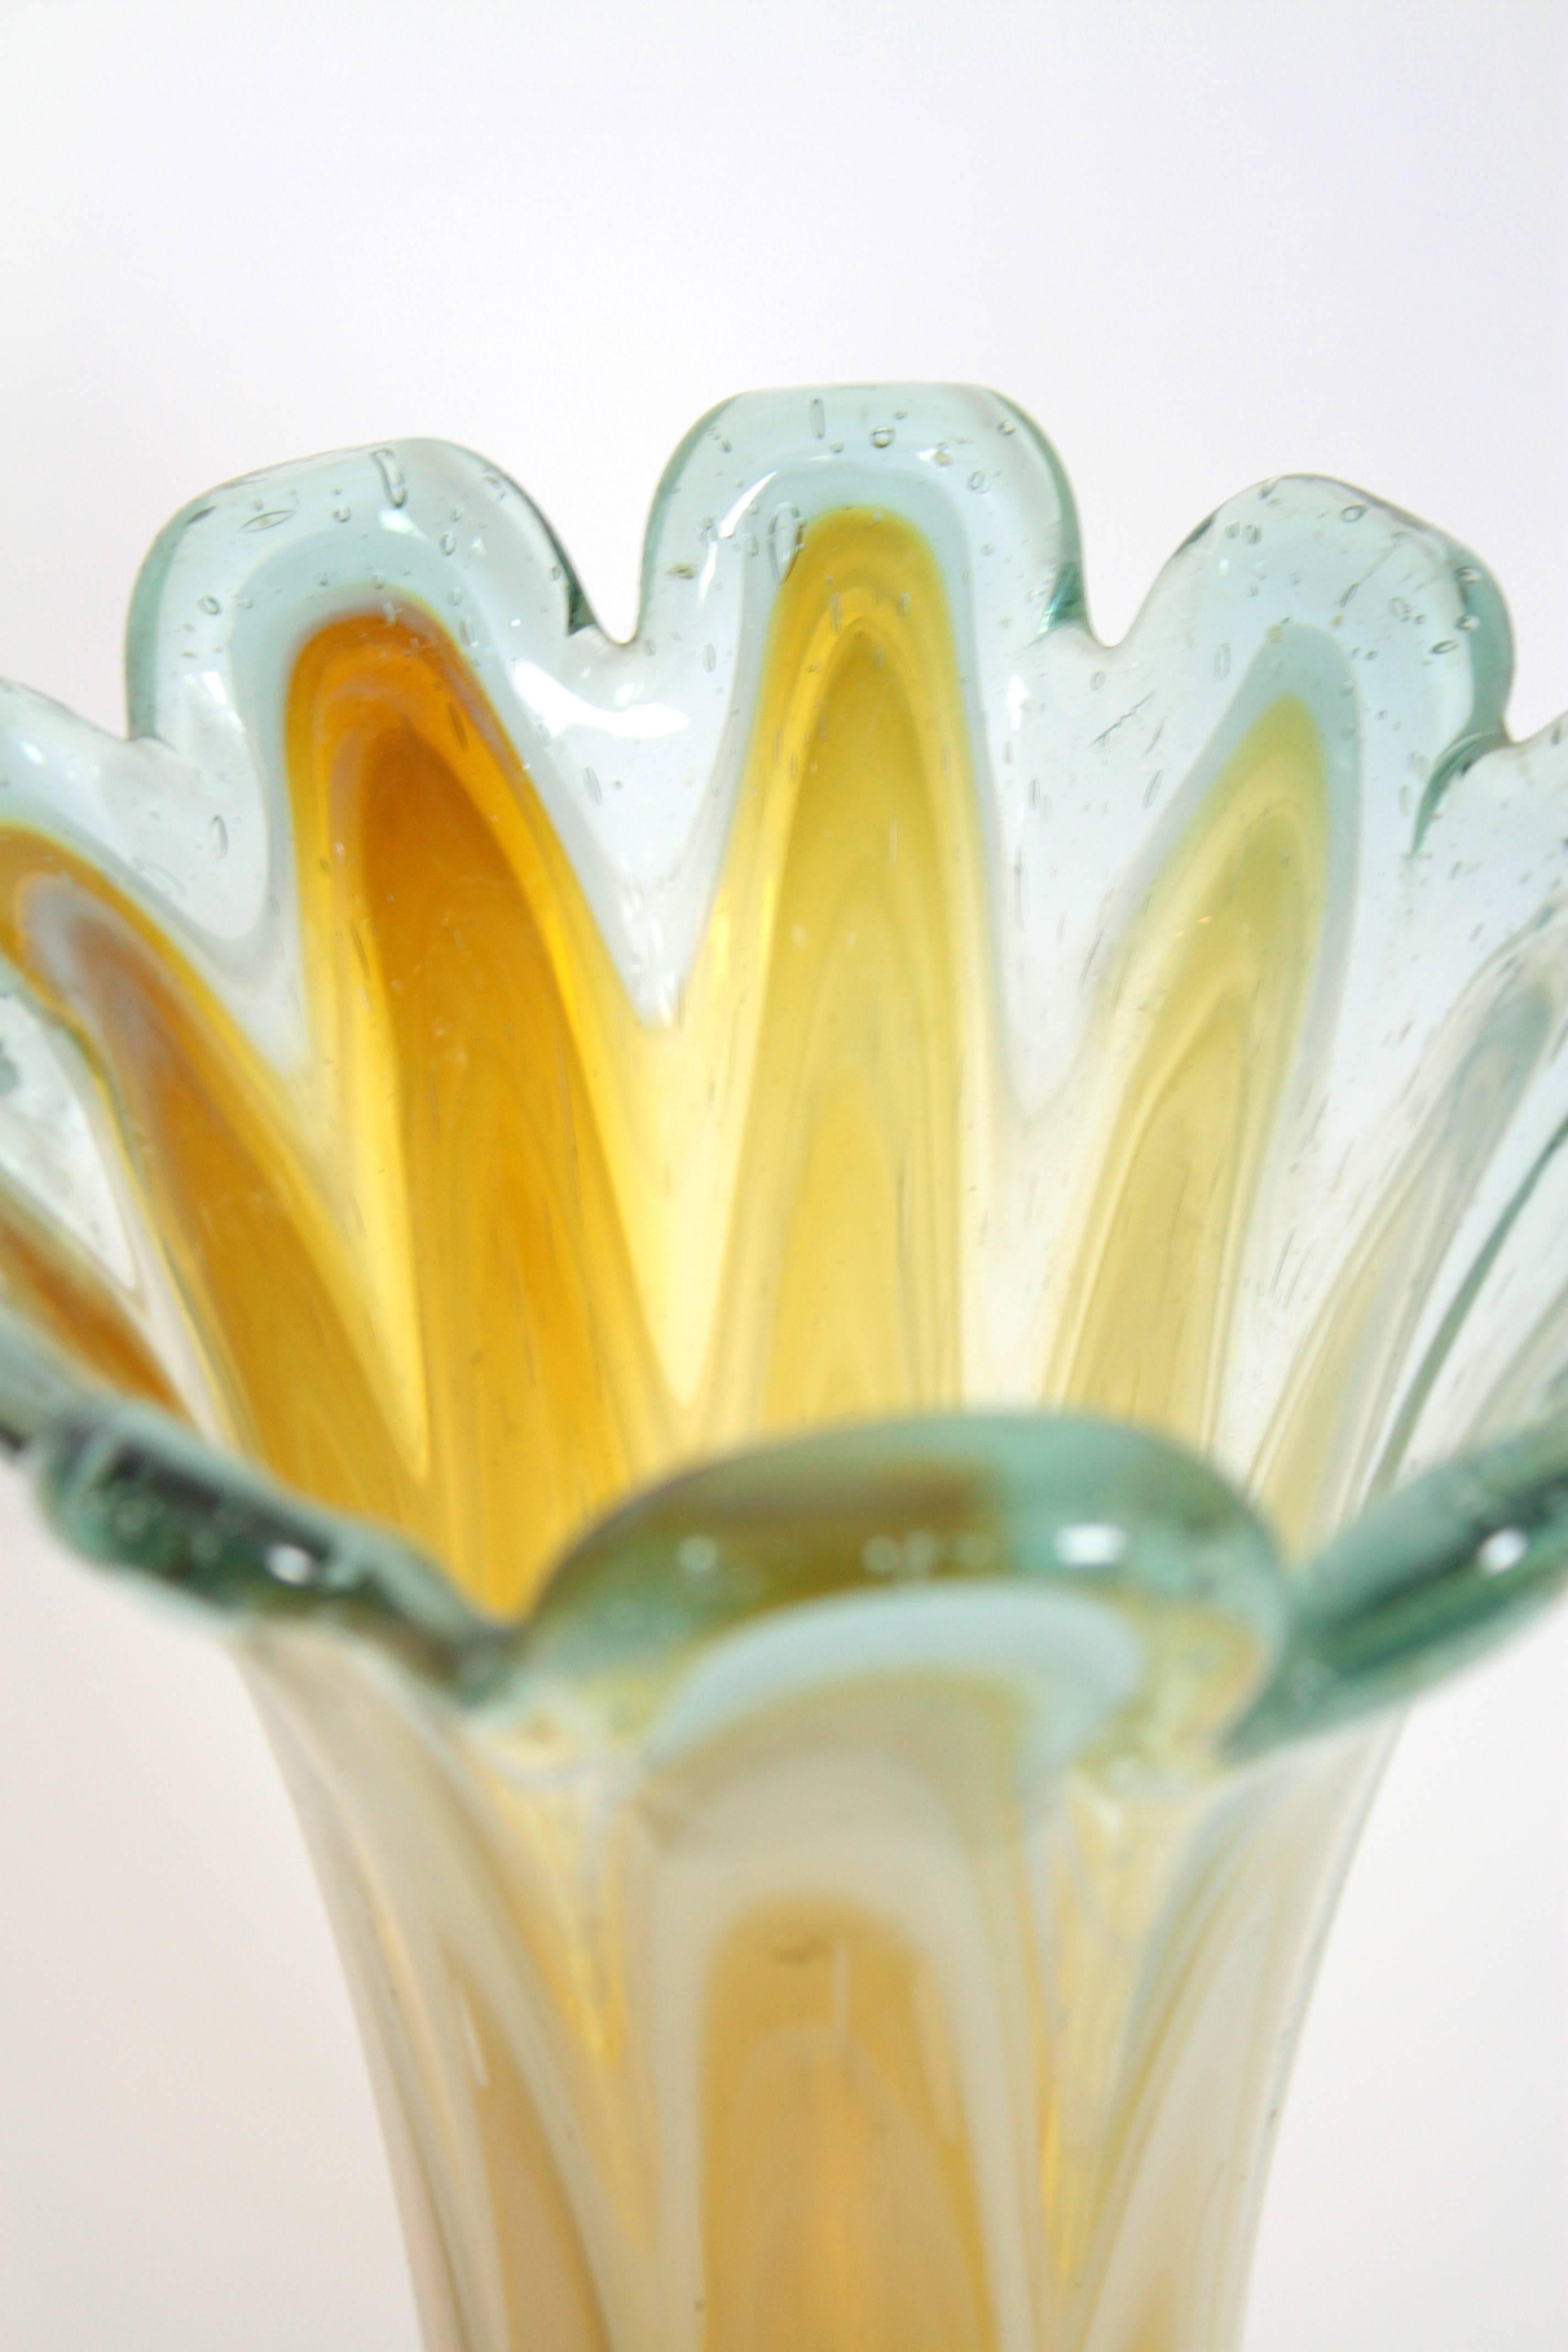 Sculptural vase festonné en verre de Murano soufflé à la main avec des ondulations (verre ambre, crème et blanc) encastrées dans du verre clair. Italie, années 1960.
Le vase est en excellent état. 
Marque de pointillisme en dessous.
A utiliser comme